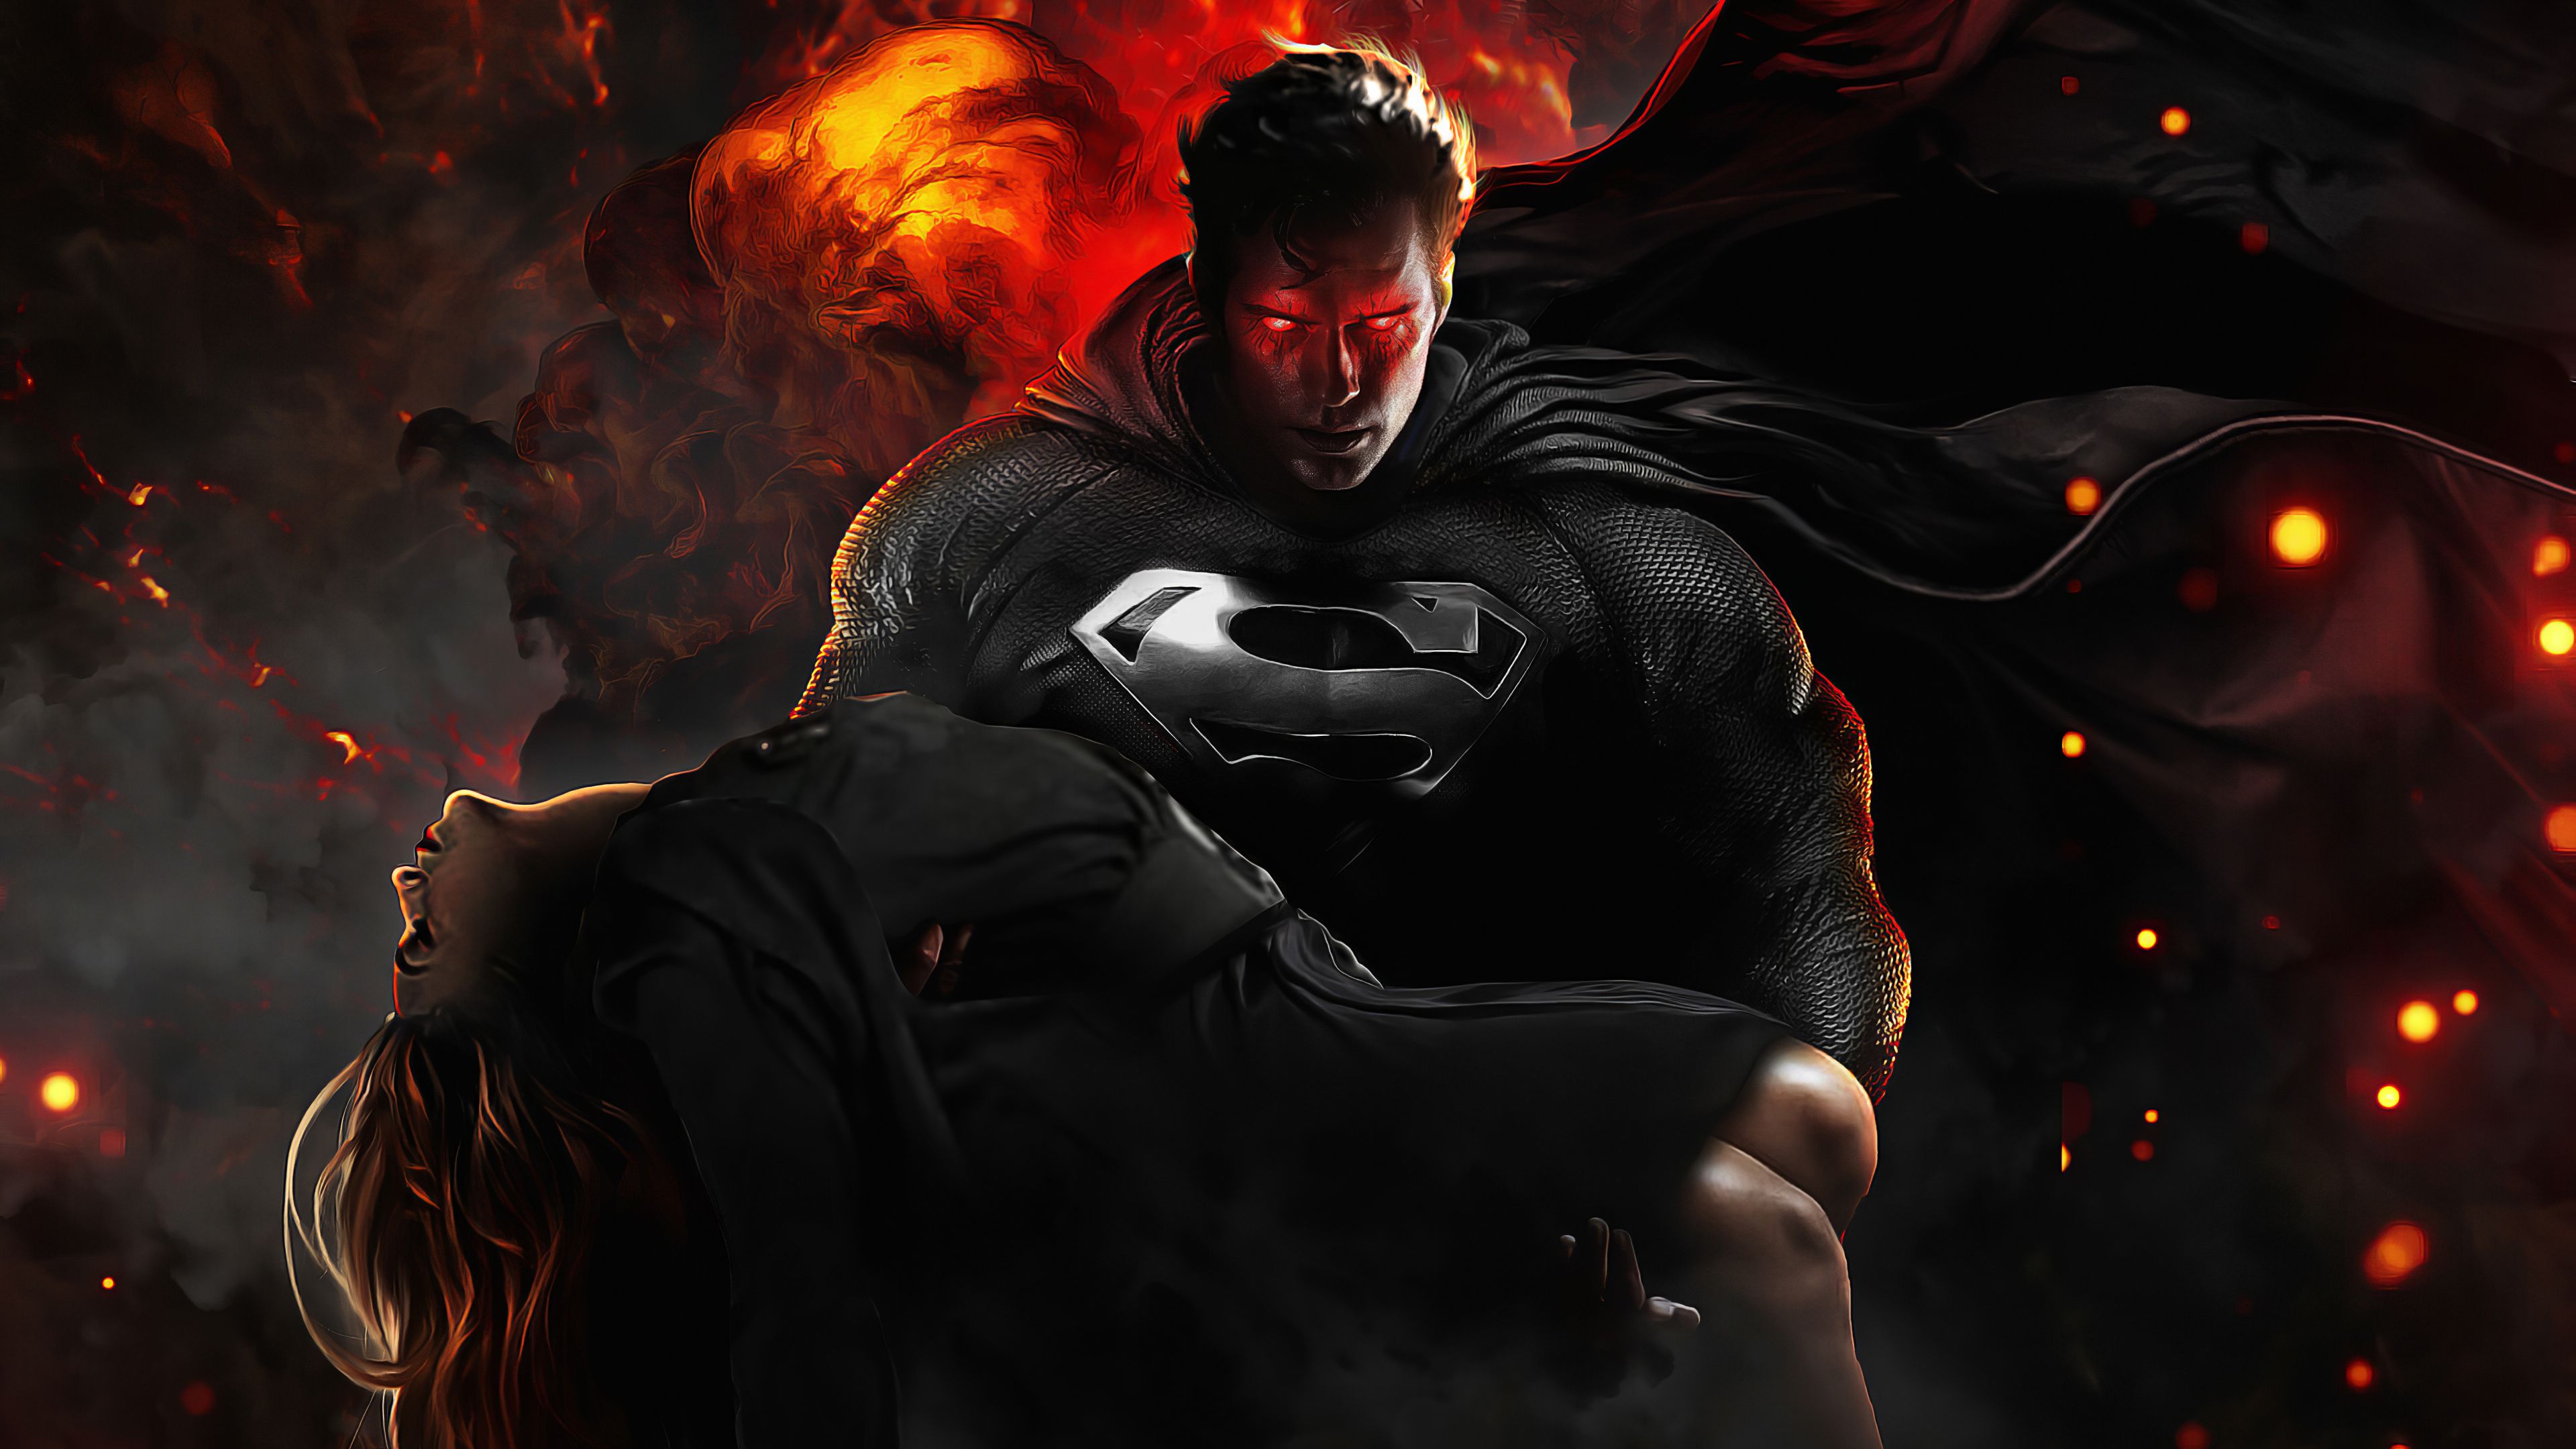 Superman in Justice league Wallpaper 4k Ultra HD